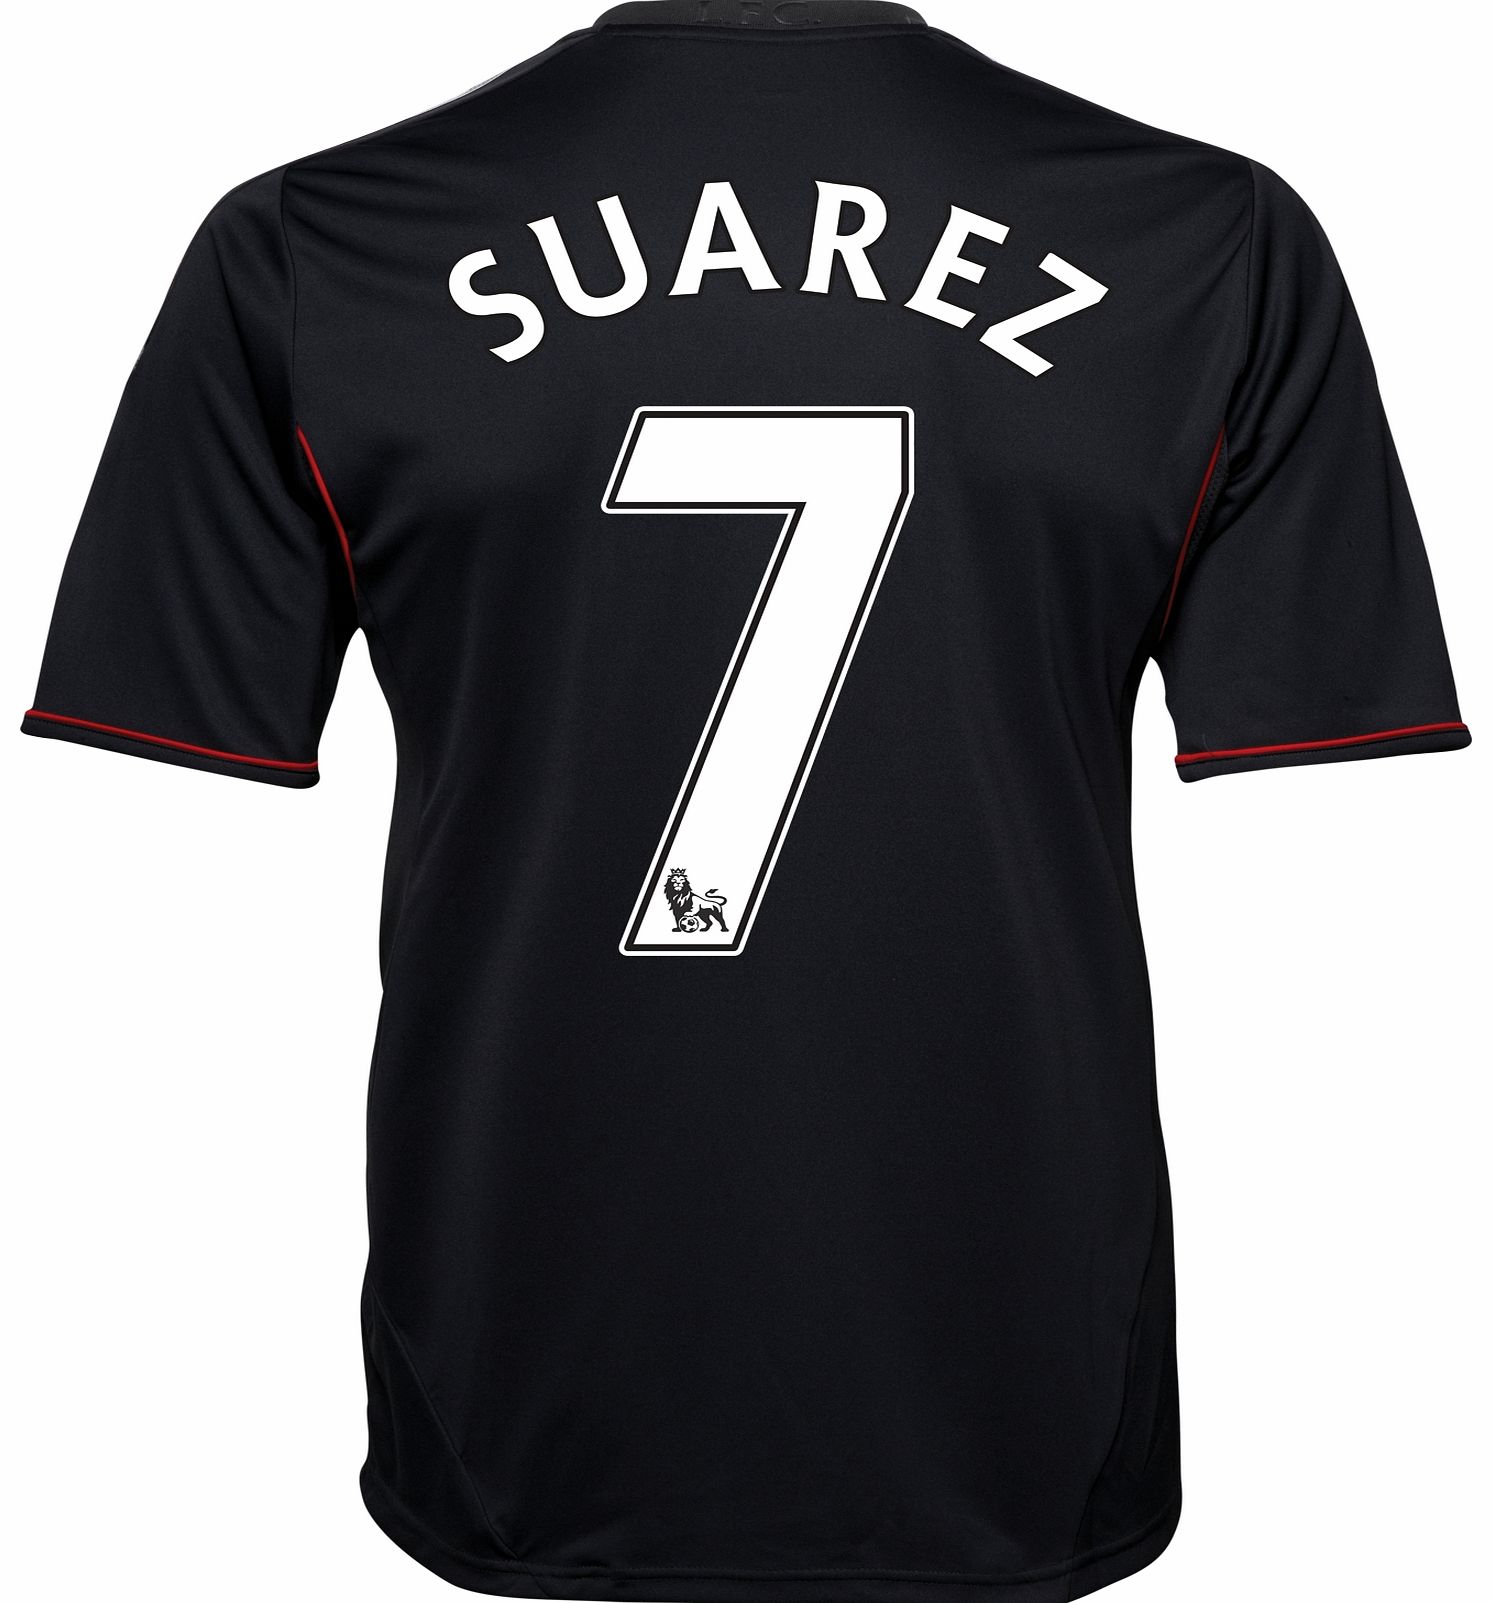 Adidas 2011-12 Liverpool Away Football Shirt (Suarez 7)